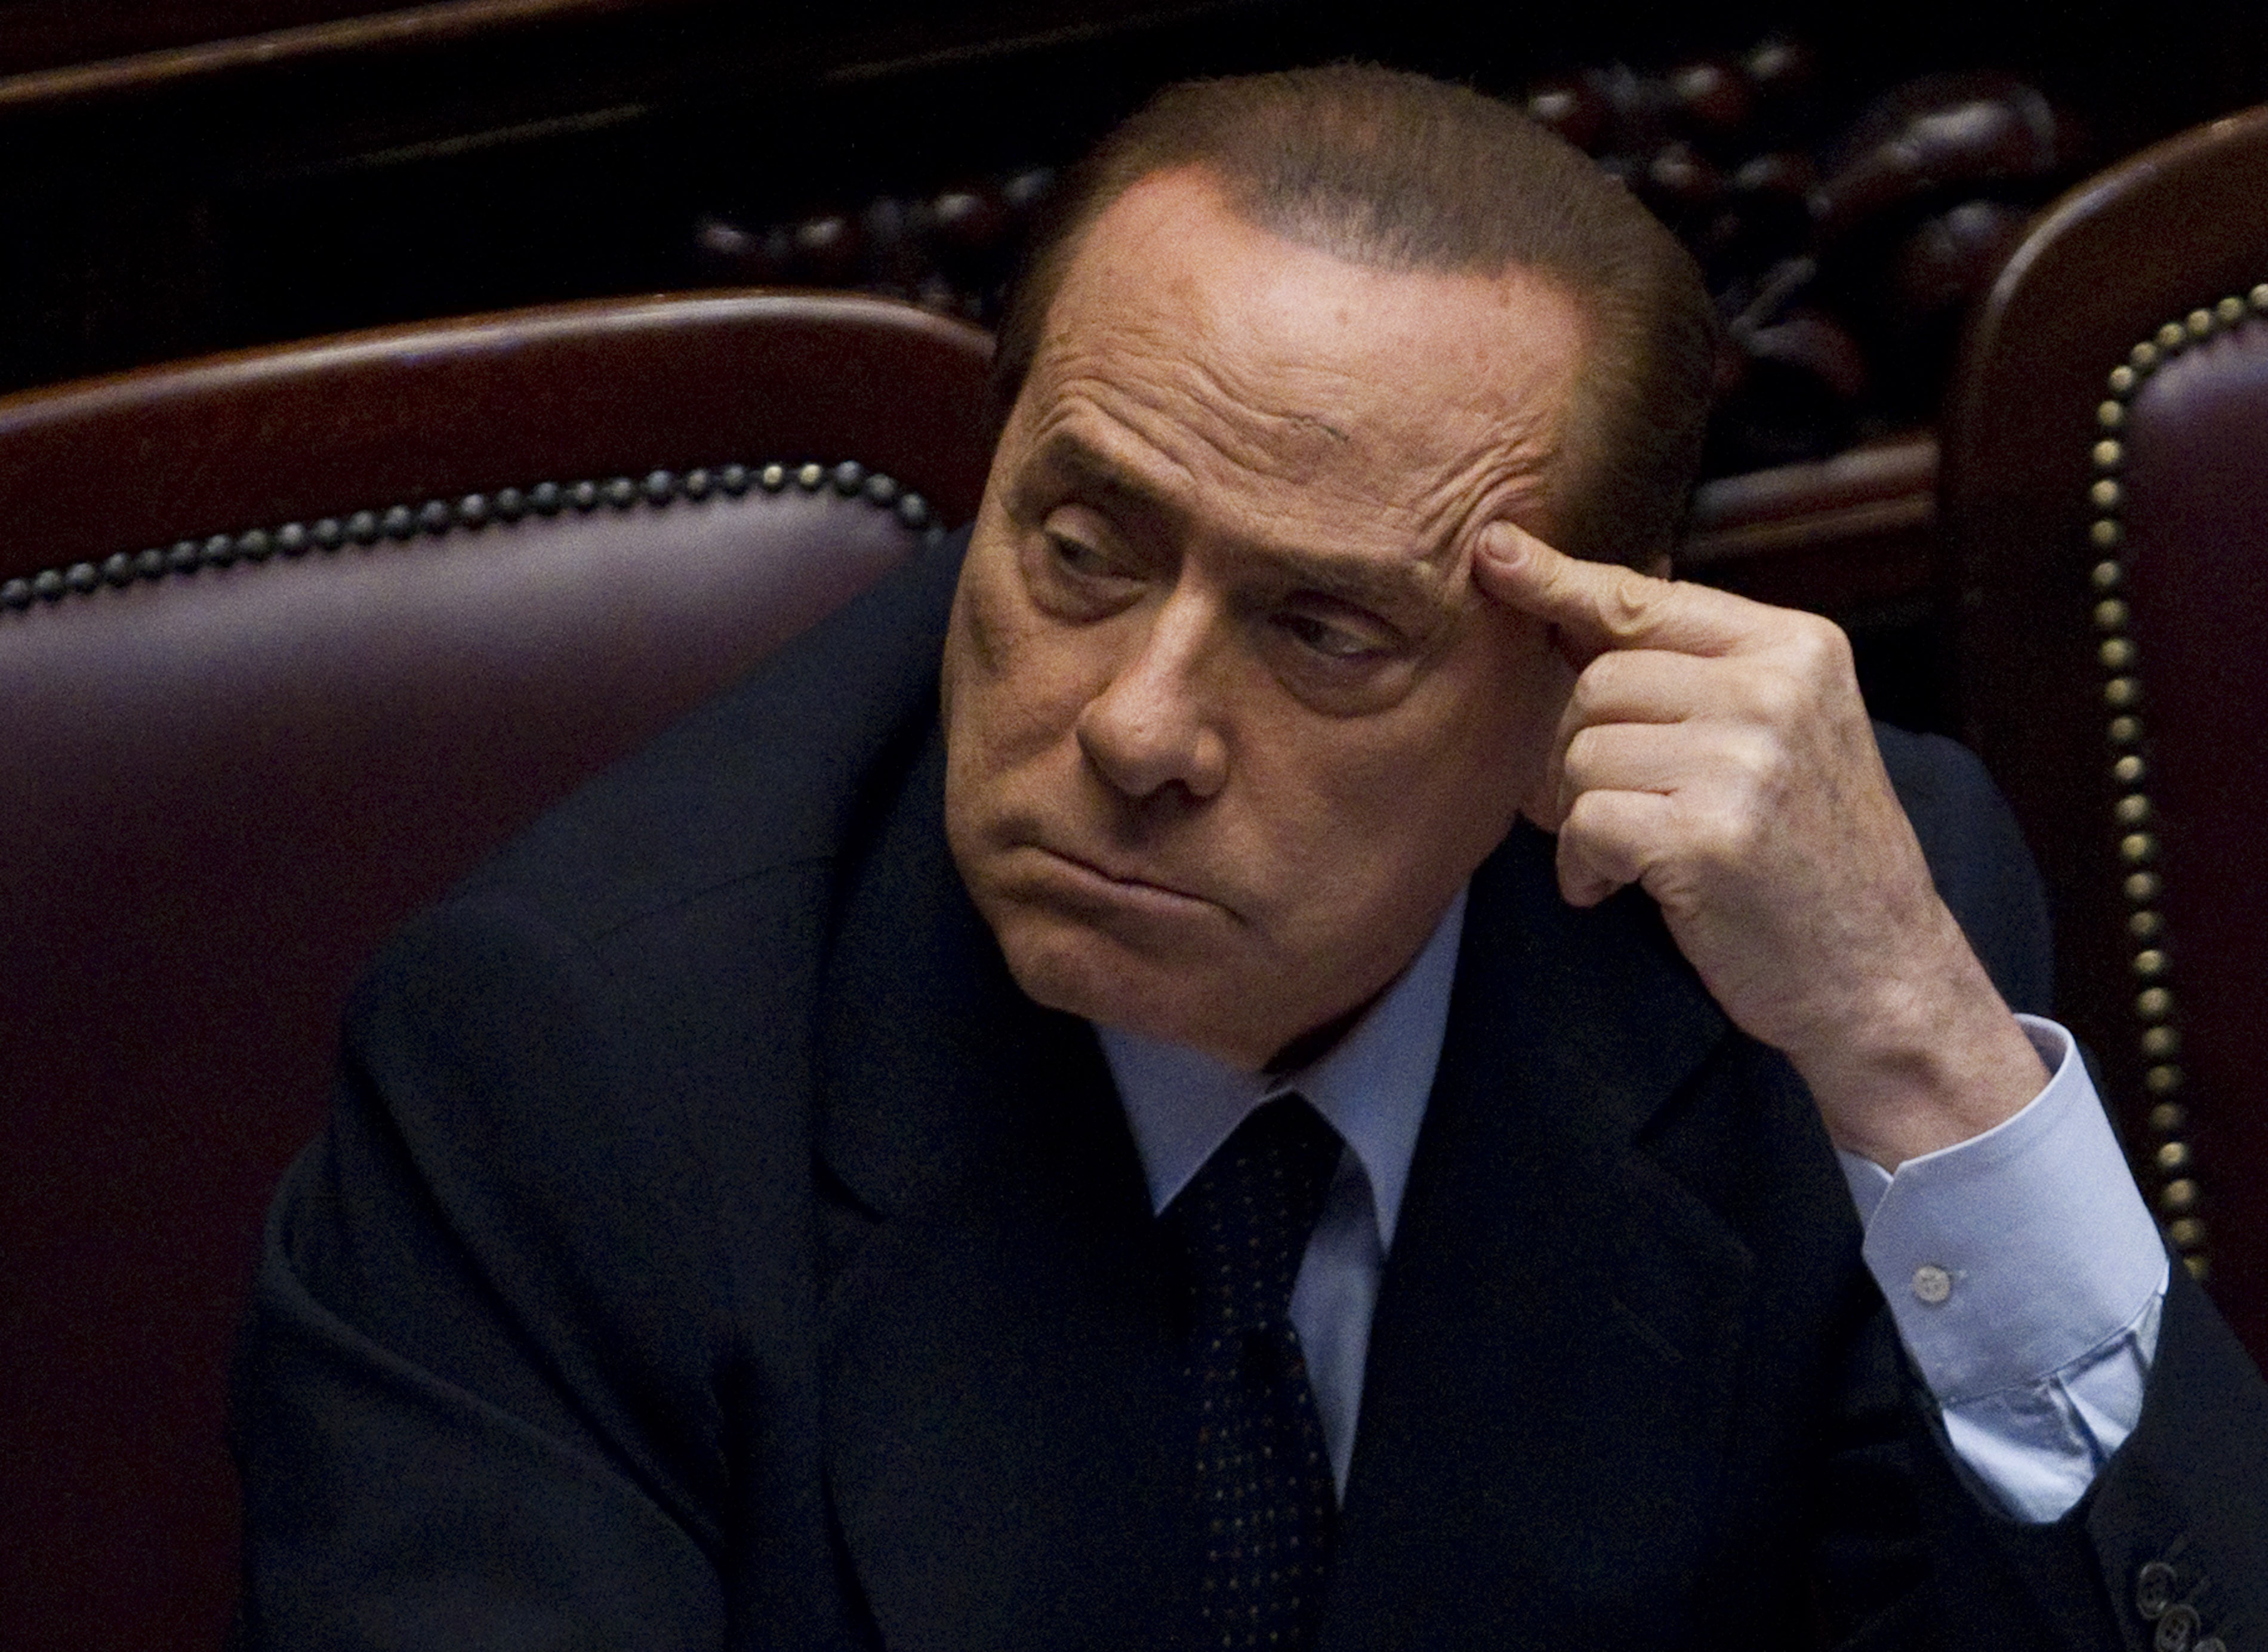 Italien, Silvio Berlusconi, Köp av sexuell tjänst, Politik, Utpressning, Prostitution, Brott och straff, Sexualbrott, Berlusconi, Sex- och samlevnad